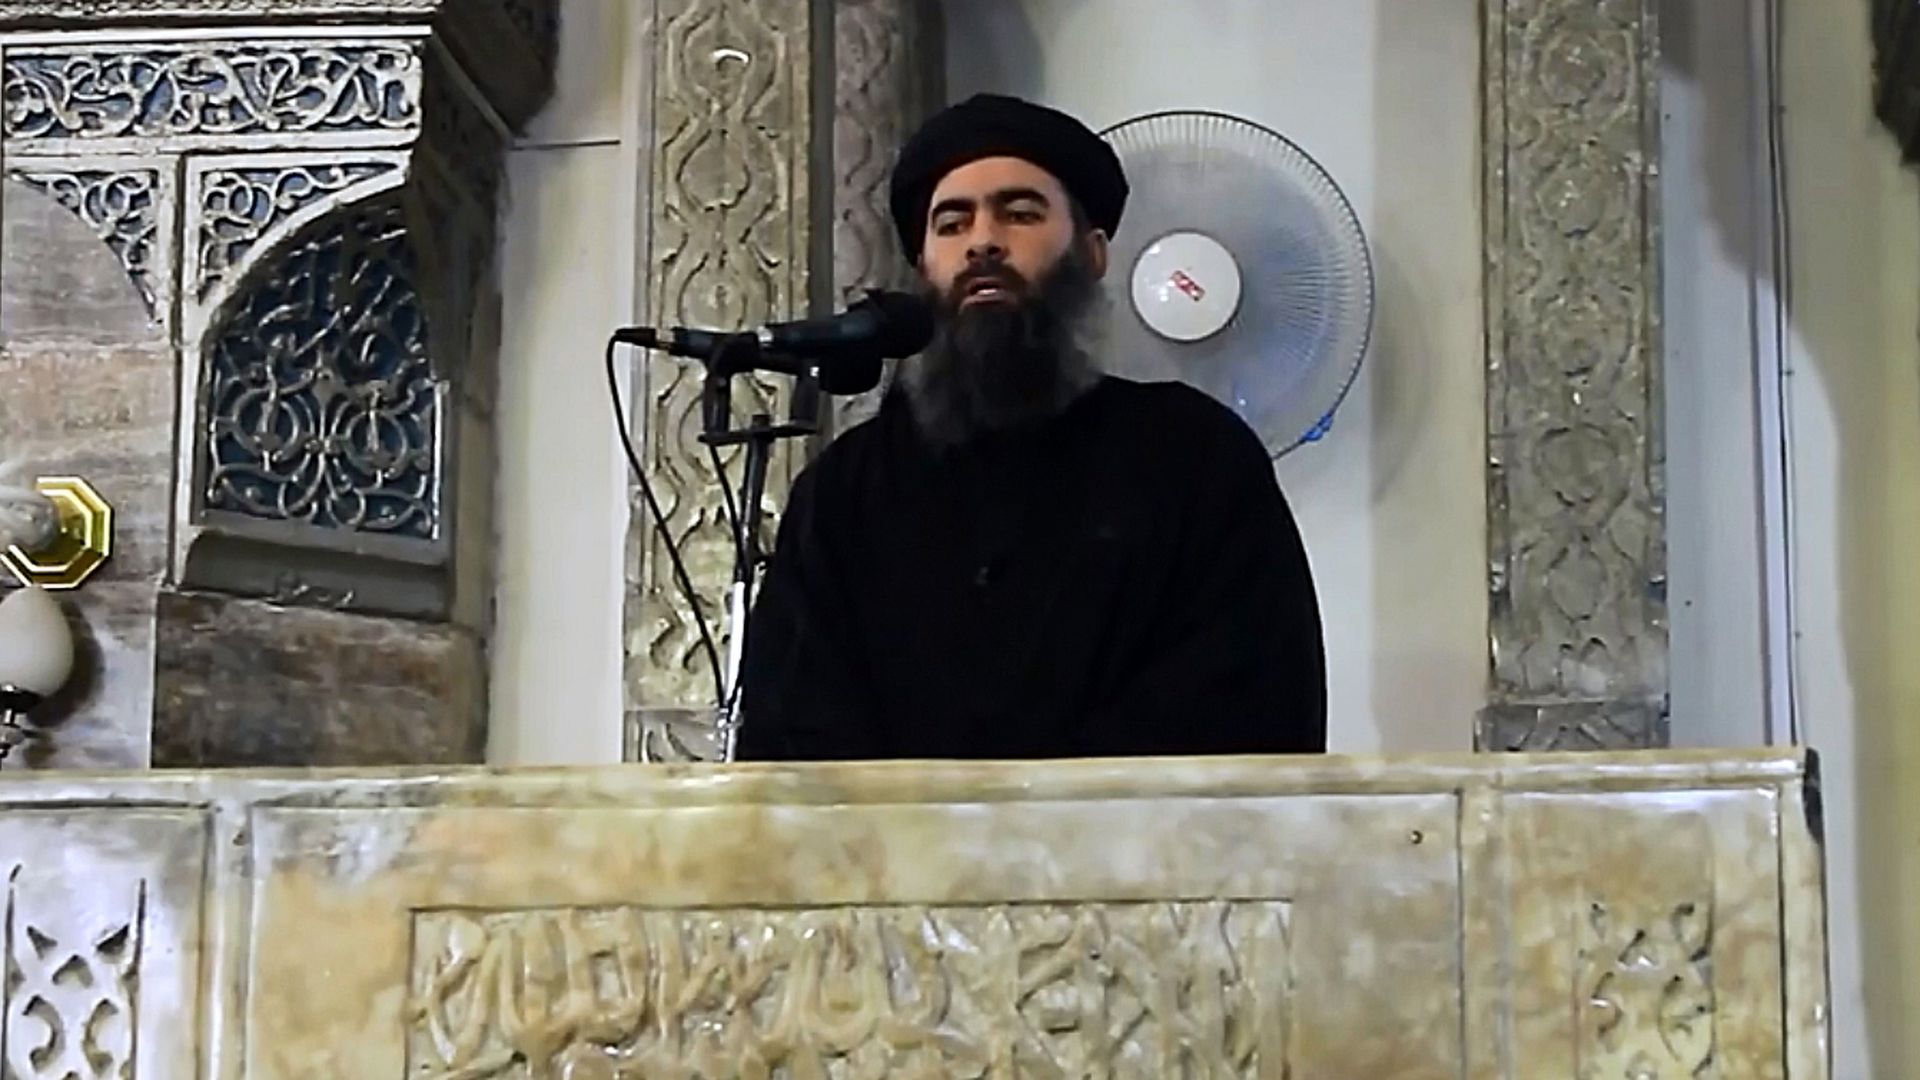 Abu Bakr al-Baghdadi in video footage speaking at a microphone. 